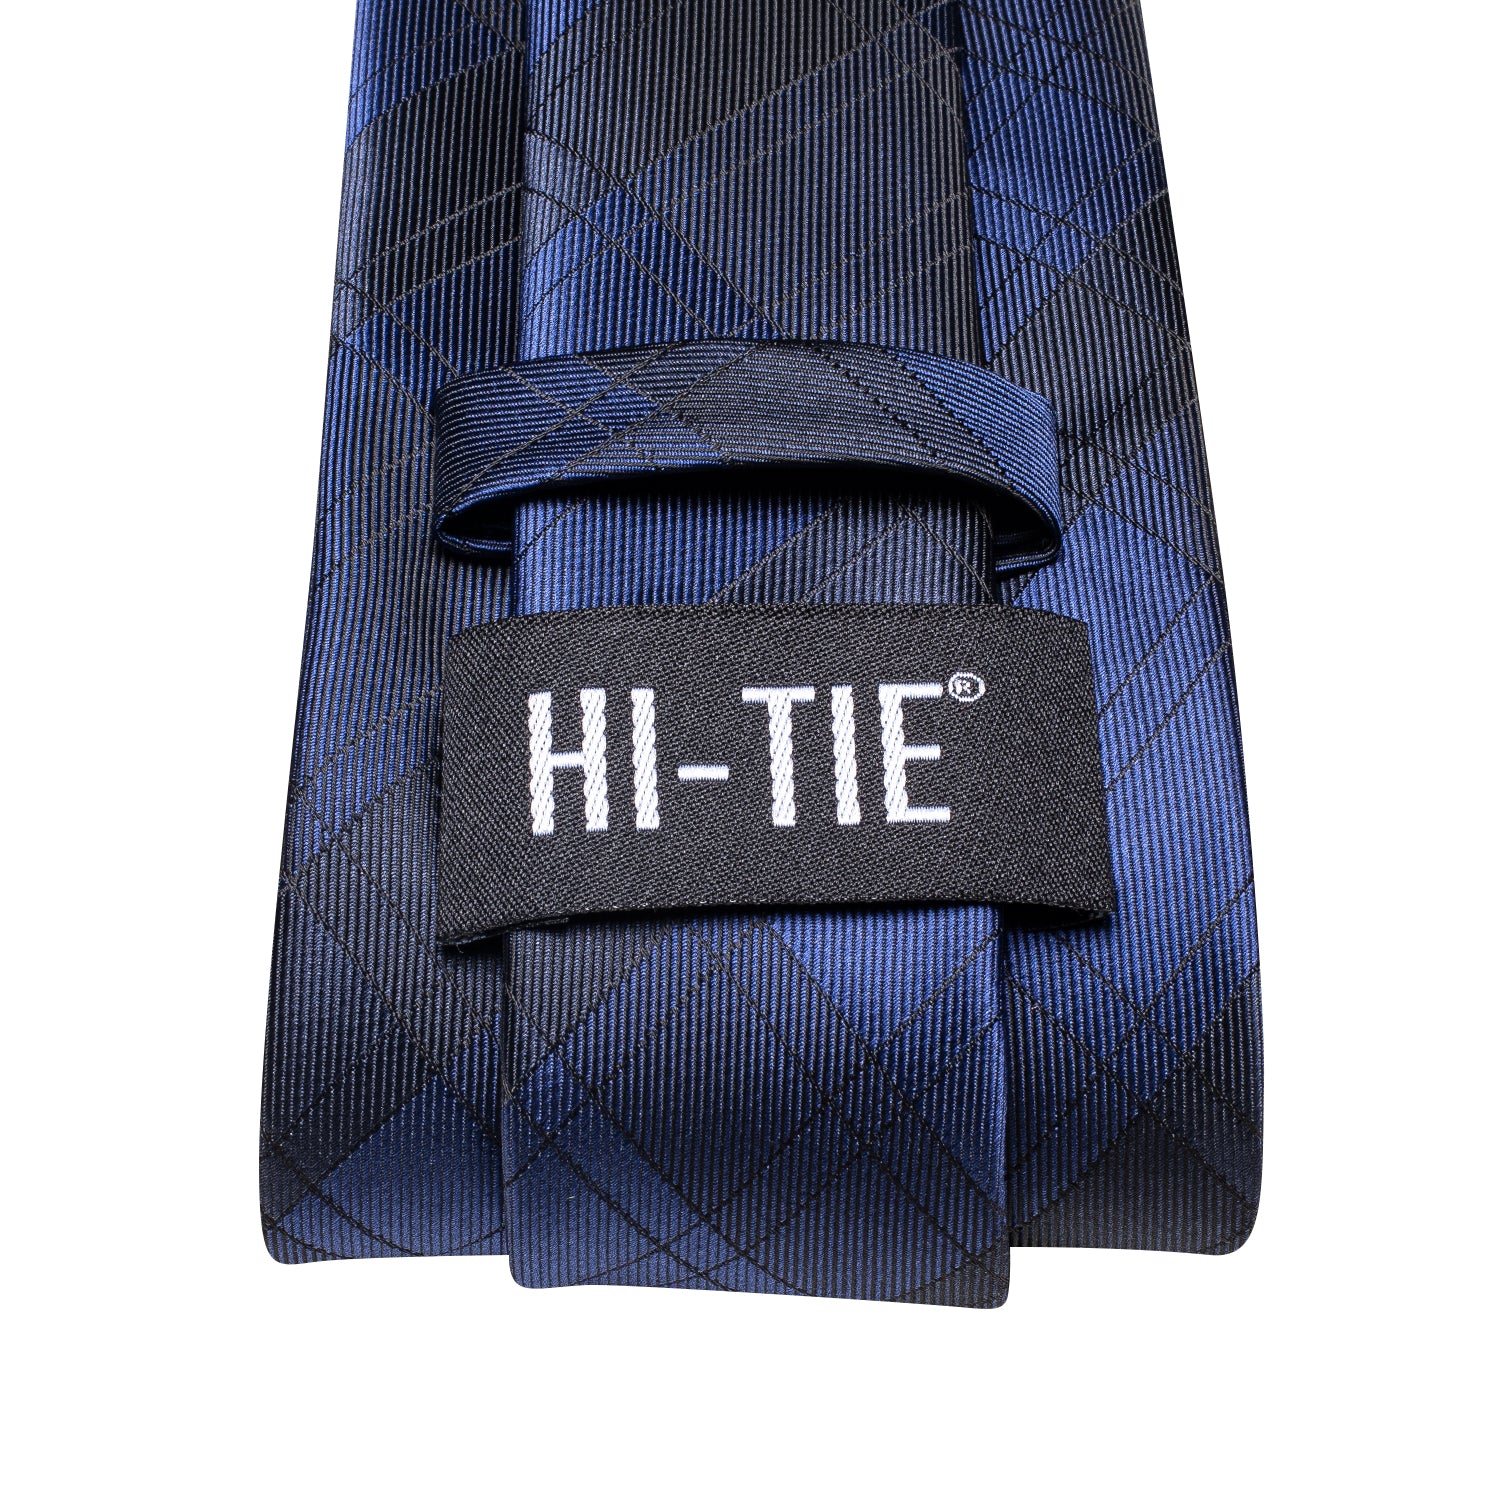 Hi-tie Necktie